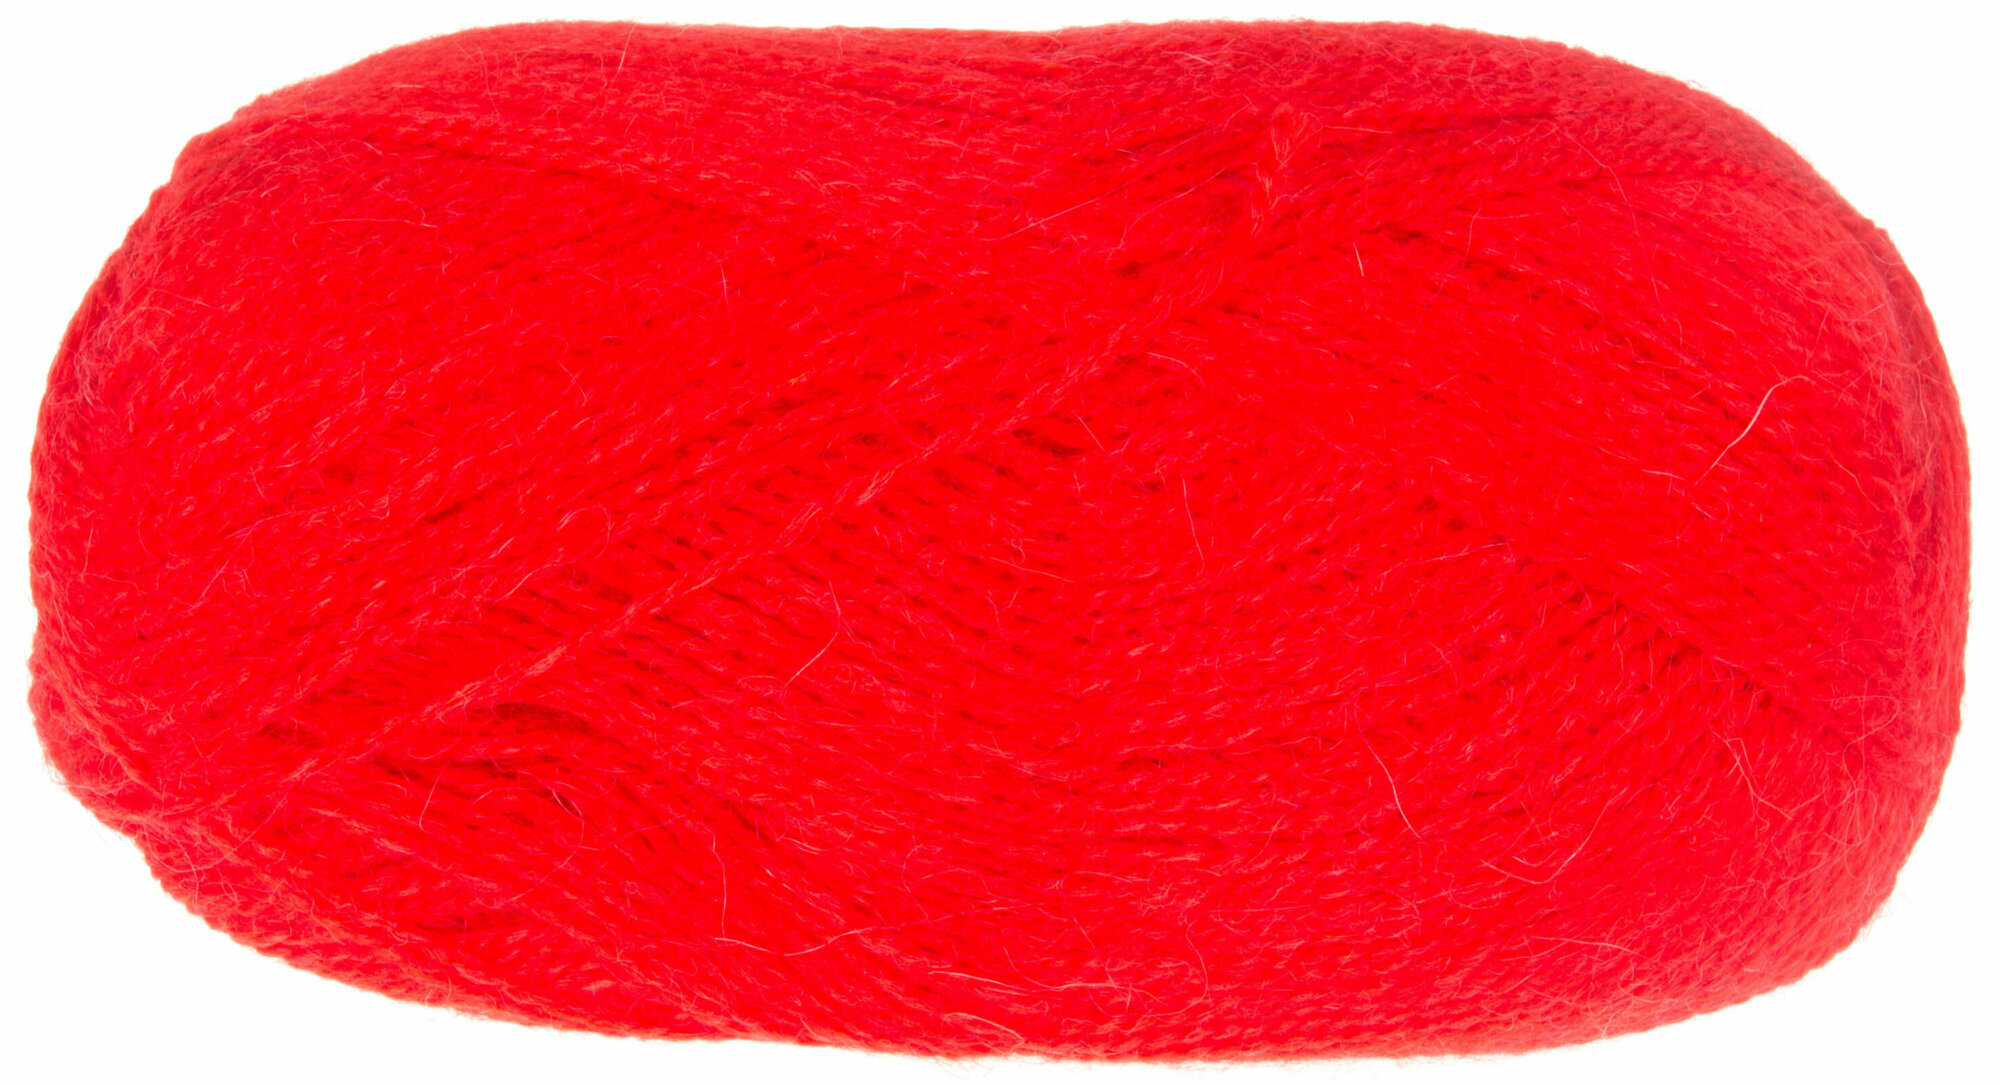 Пряжа Пехорка Великолепная красный мак (88), 70%акрил/30%ангора, 300м, 100г, 1шт